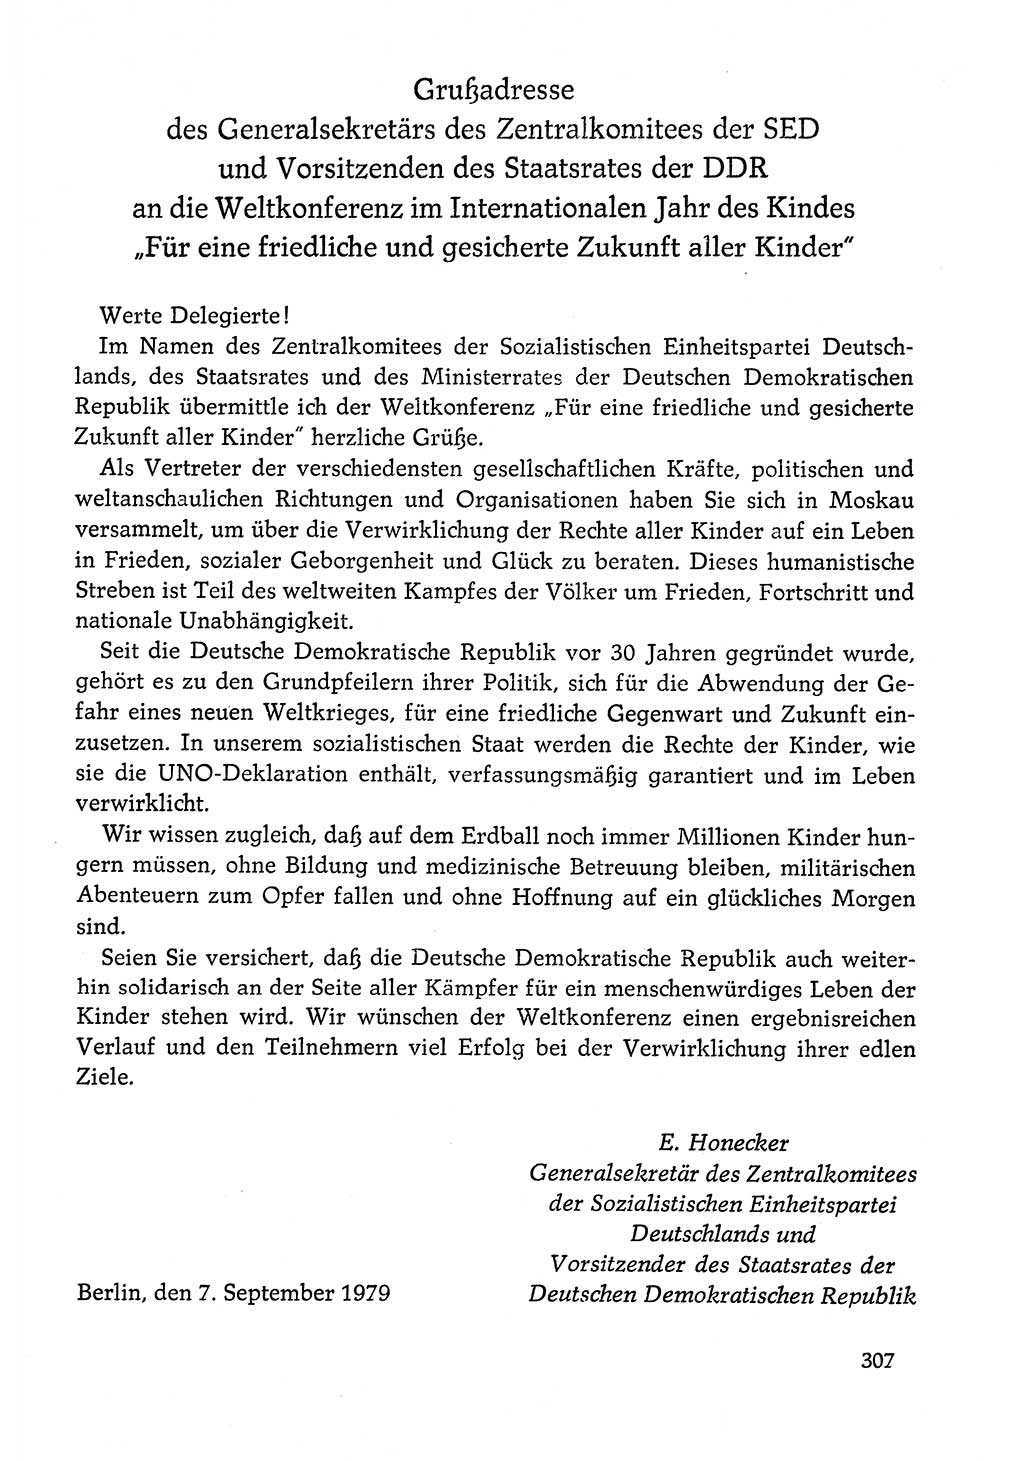 Dokumente der Sozialistischen Einheitspartei Deutschlands (SED) [Deutsche Demokratische Republik (DDR)] 1978-1979, Seite 307 (Dok. SED DDR 1978-1979, S. 307)